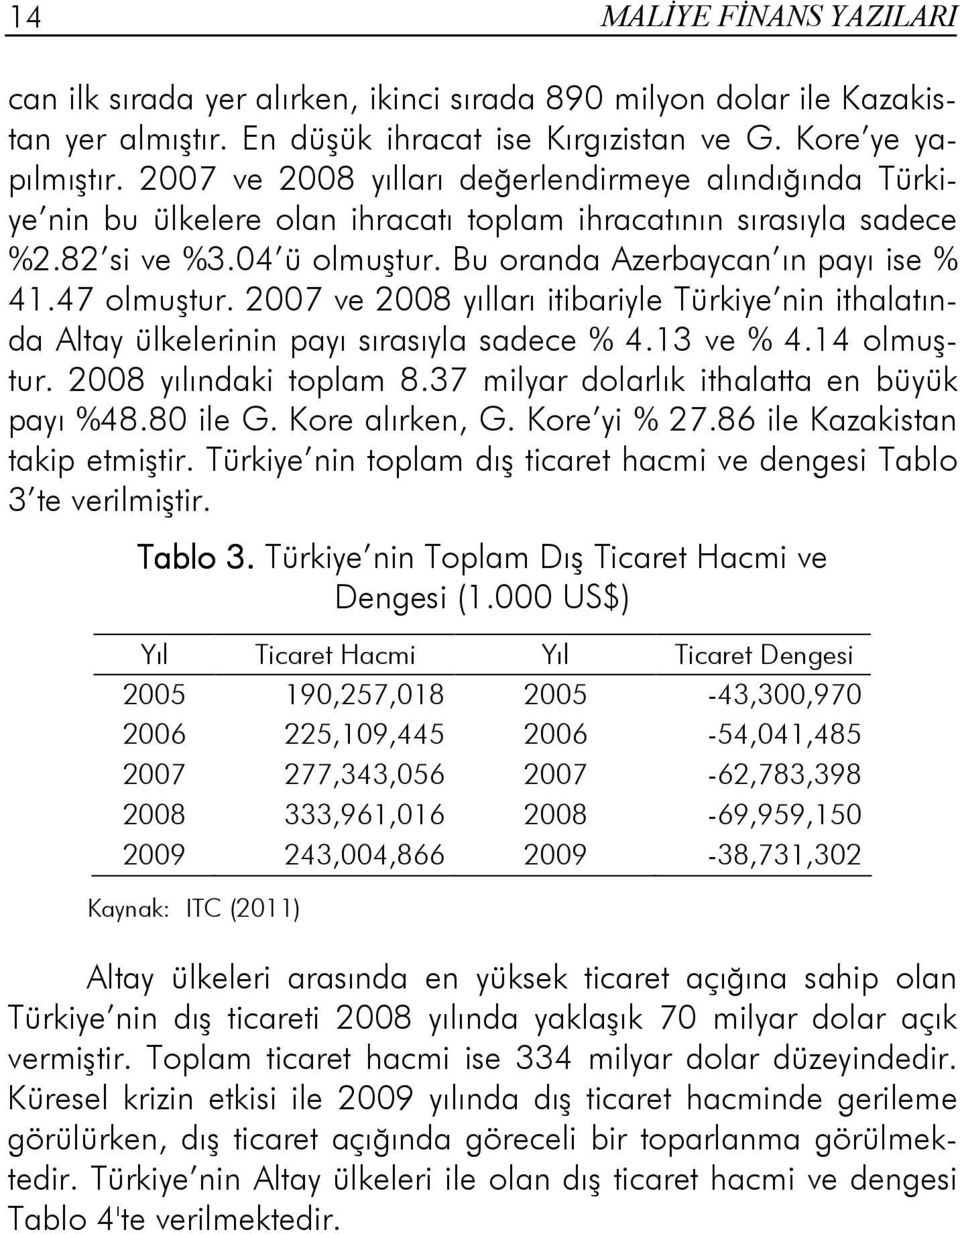 47 olmuştur. 2007 ve 2008 yılları itibariyle Türkiye nin ithalatında Altay ülkelerinin payı sırasıyla sadece % 4.13 ve % 4.14 olmuştur. 2008 yılındaki toplam 8.